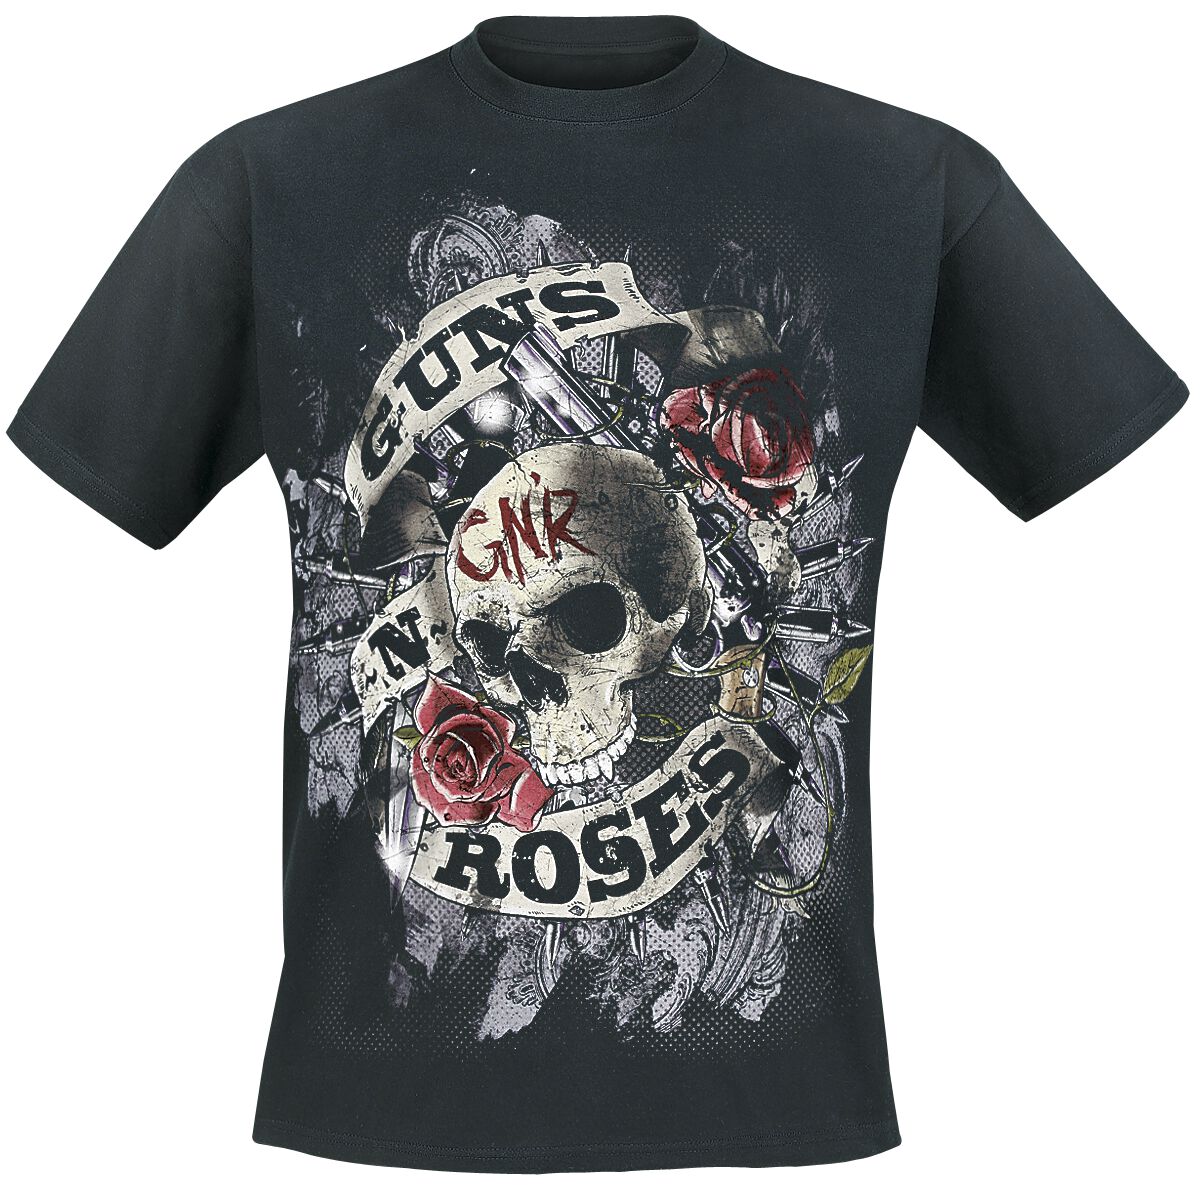 Guns N' Roses T-Shirt - Firepower - S bis 5XL - für Männer - Größe 4XL - schwarz  - Lizenziertes Merchandise! von Guns N' Roses